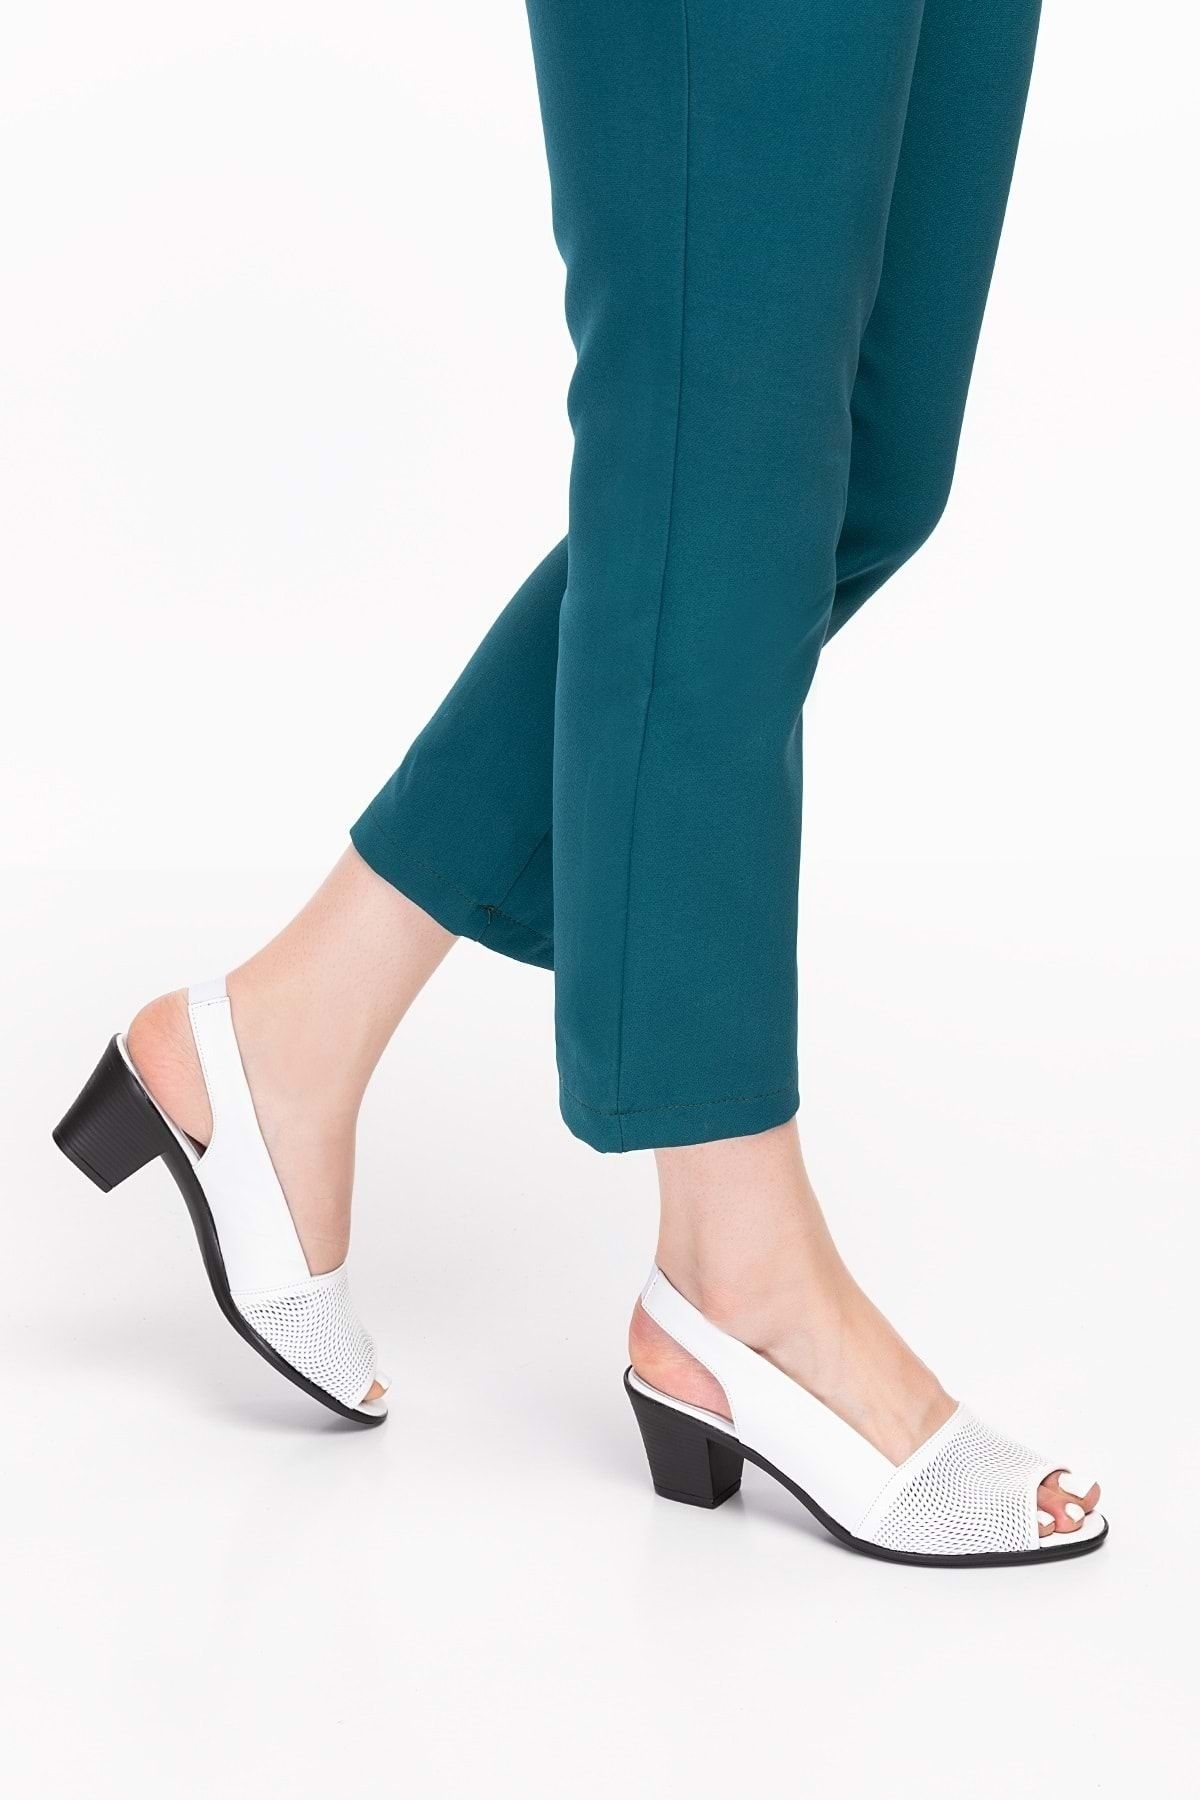 Gondol Kadın Hakiki Deri Klasik Topuklu Ayakkabı Vdt.262 - Beyaz - 41